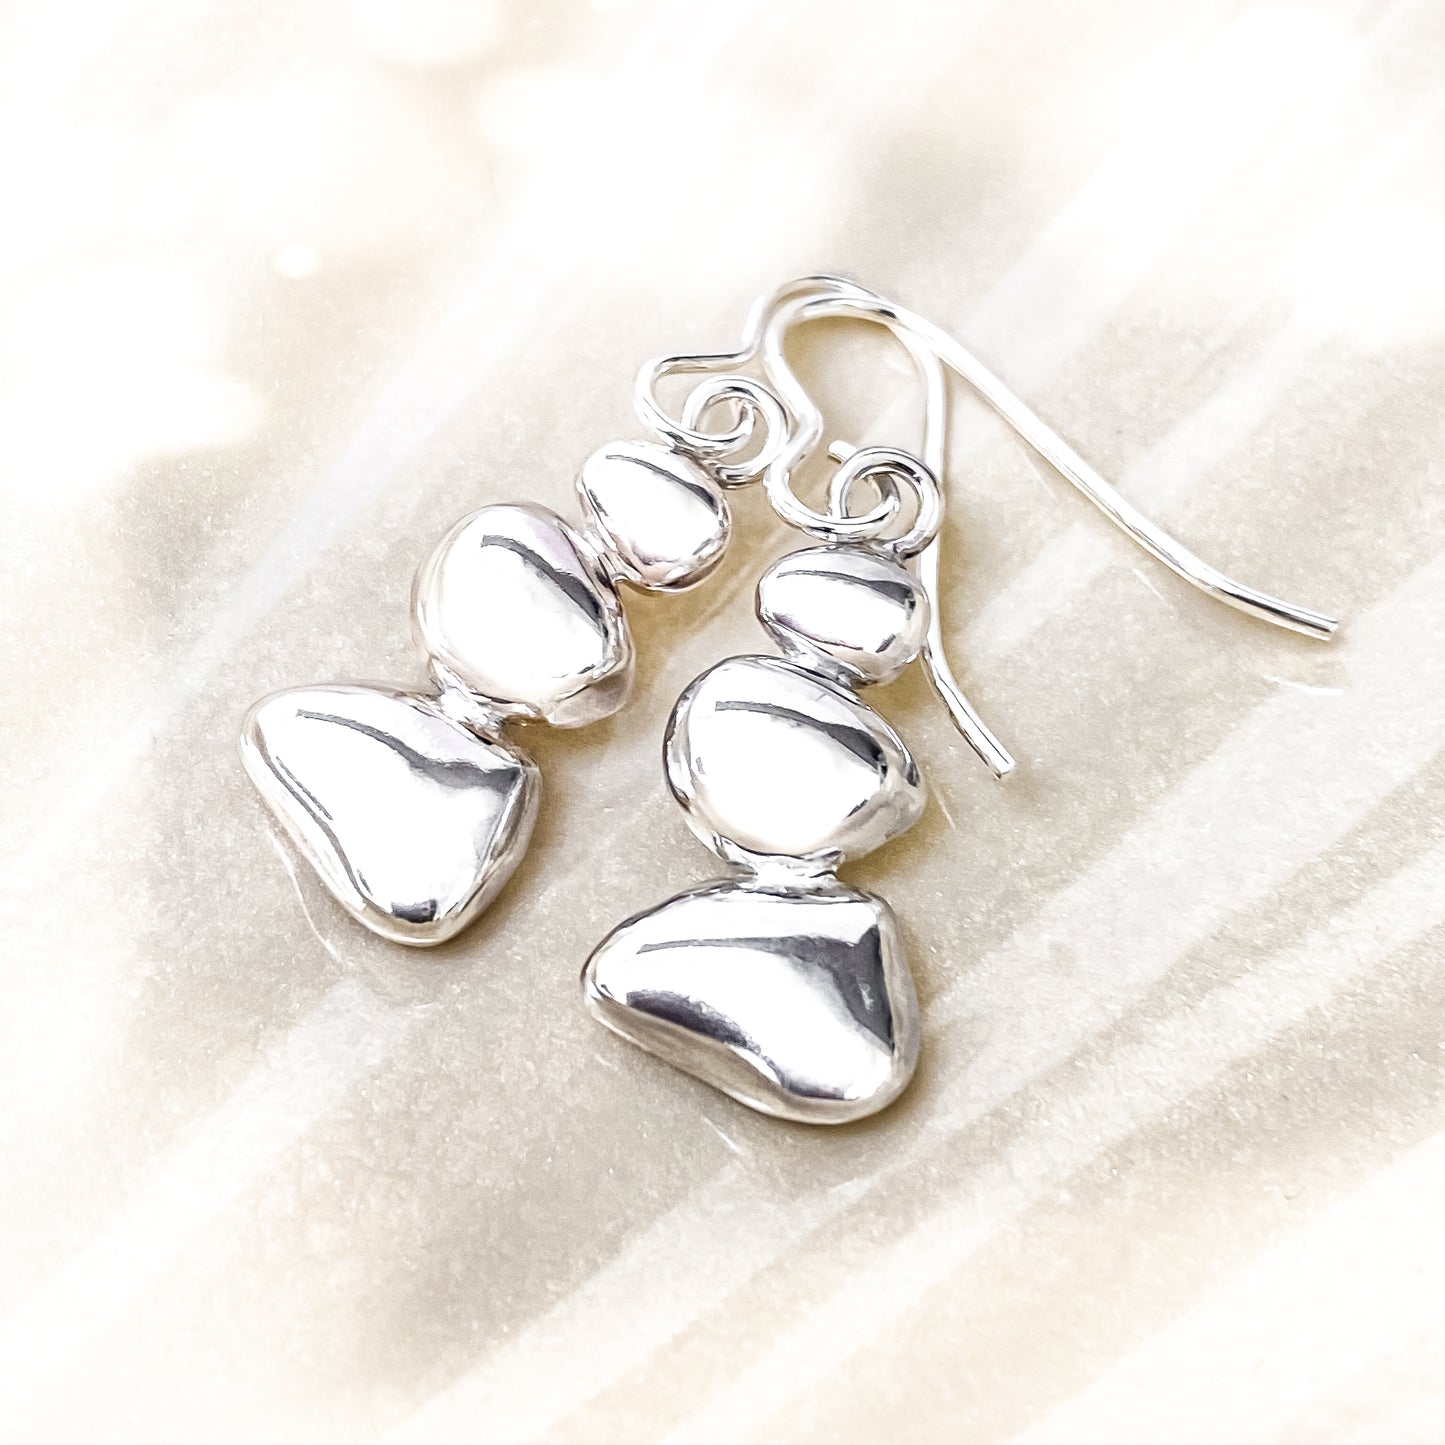 Sterling Silver Pebble Earrings - Balance No. 3